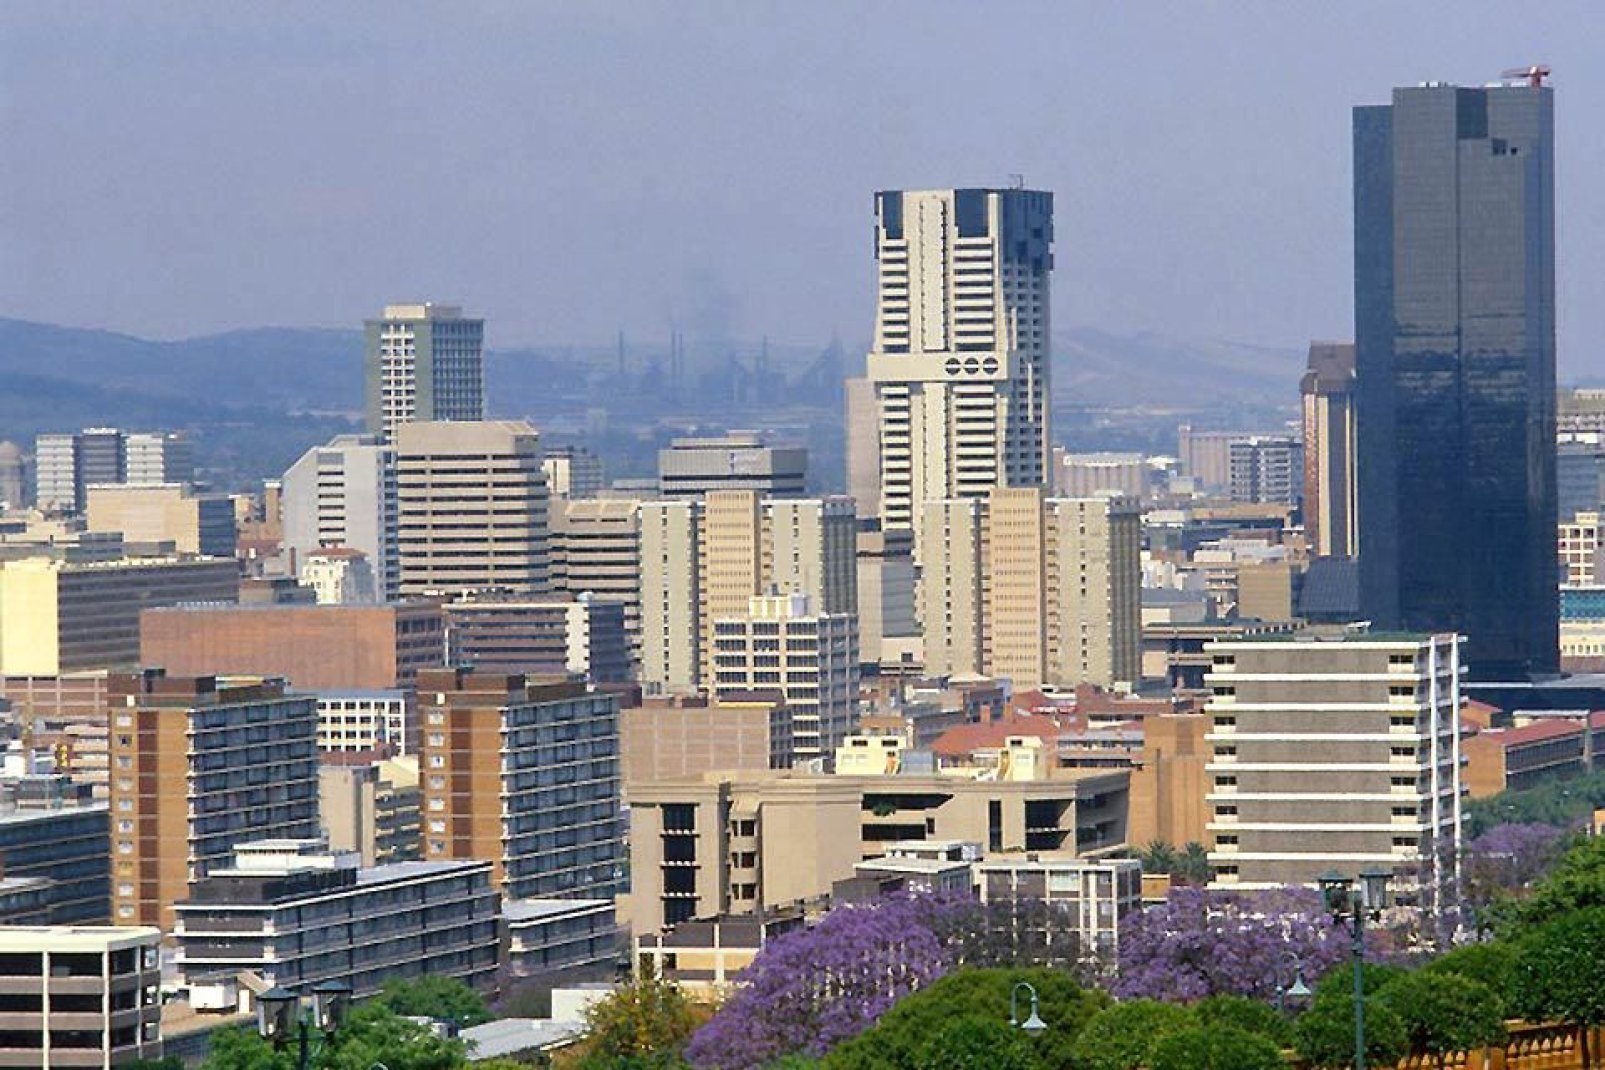 La ciudad, antigua capital sudafricana del Transvaal, es bastante turística. Pretoria es una ciudad dinámica que sabe sacar partido de sus atractivos.